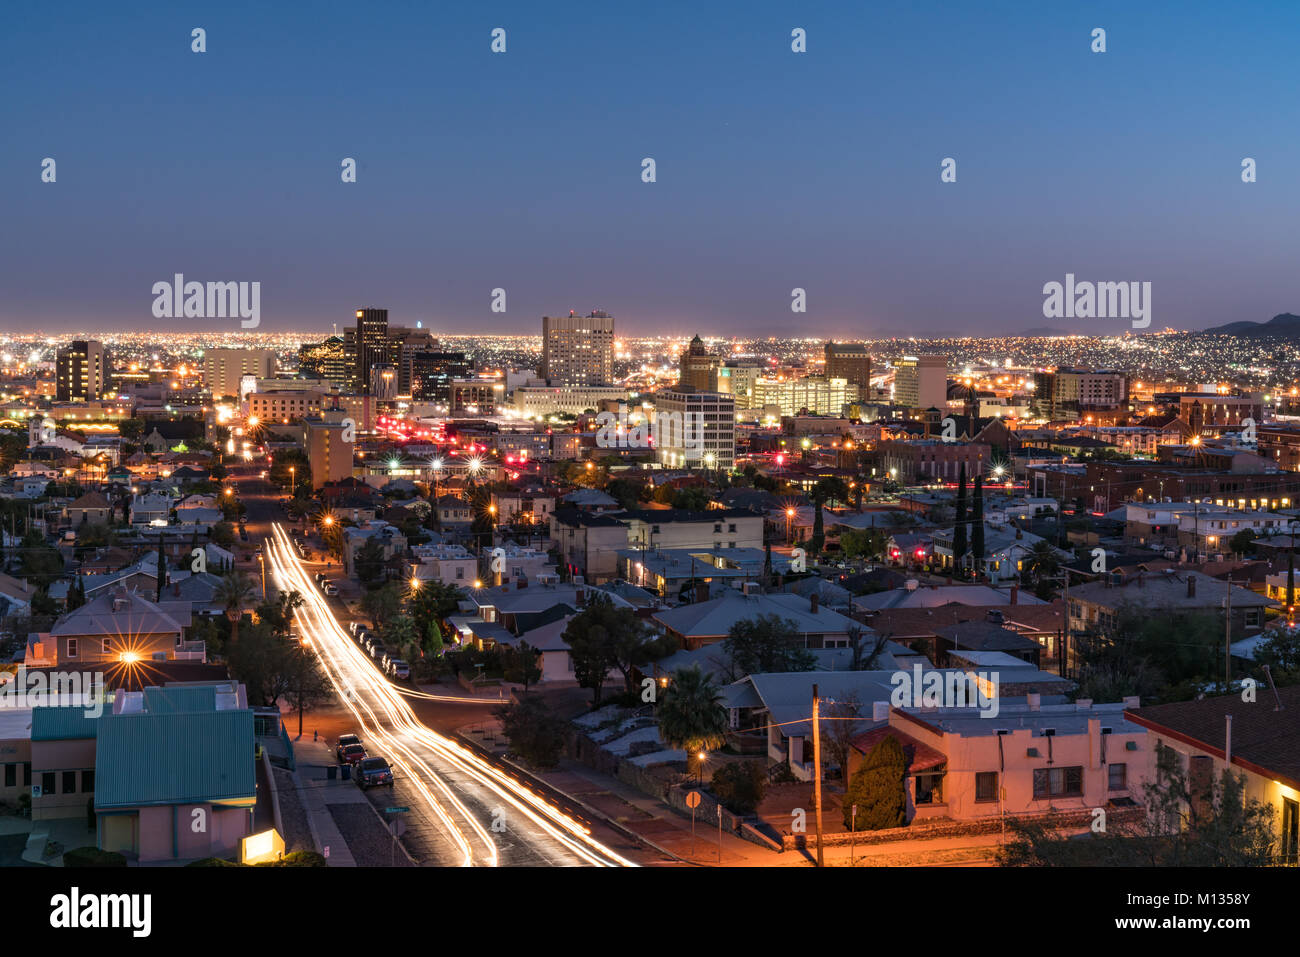 EL PASO, TX - OCTOBER 26, 2017: Night skyline of El Paso, Texas Stock Photo